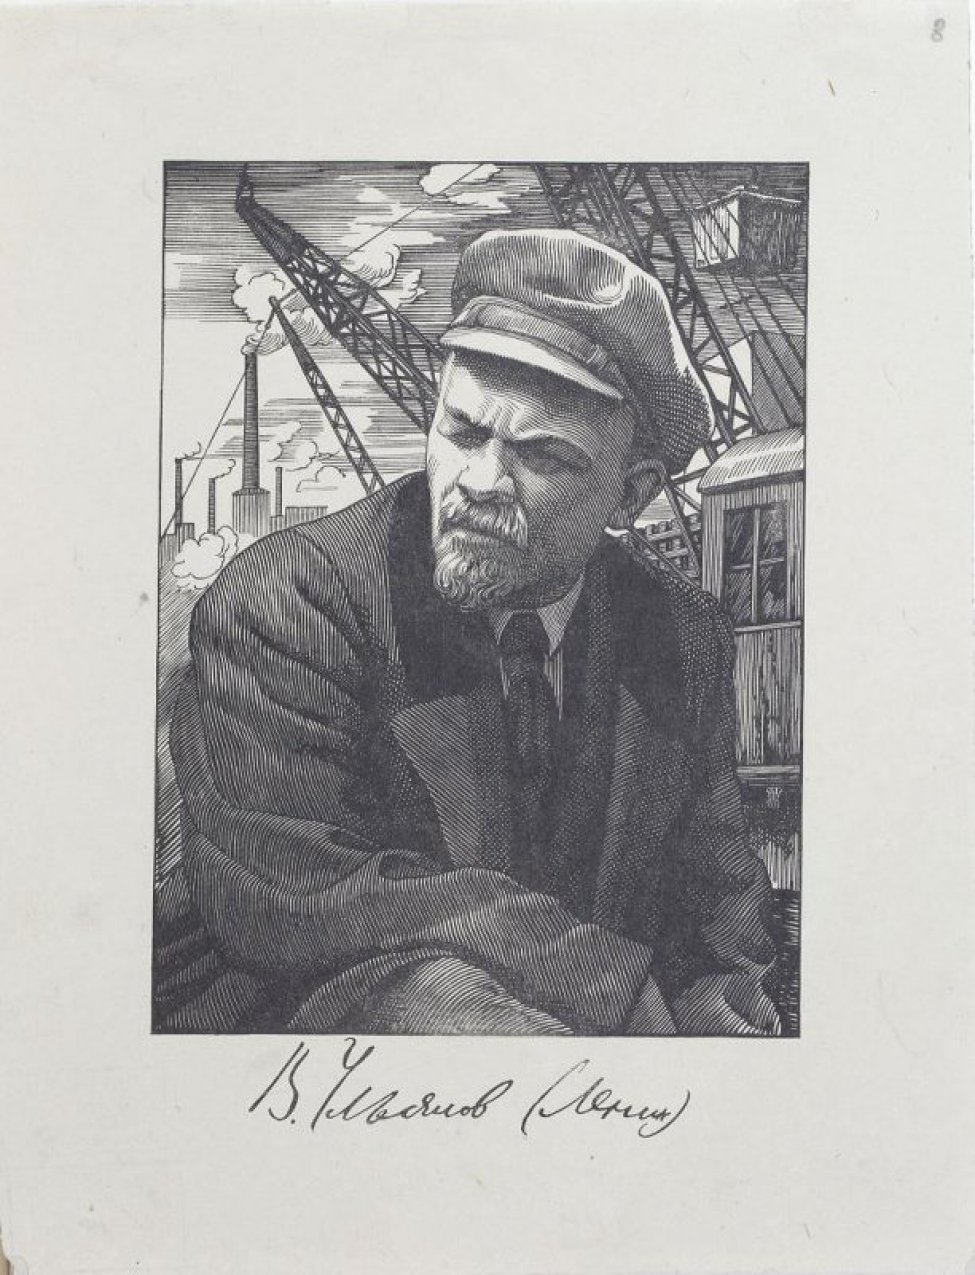 Поясное изображение В.И.Ленина в пальто, фуражке, с прищуренным правым глазом. В.И.Ленин изображен на фоне заводов.